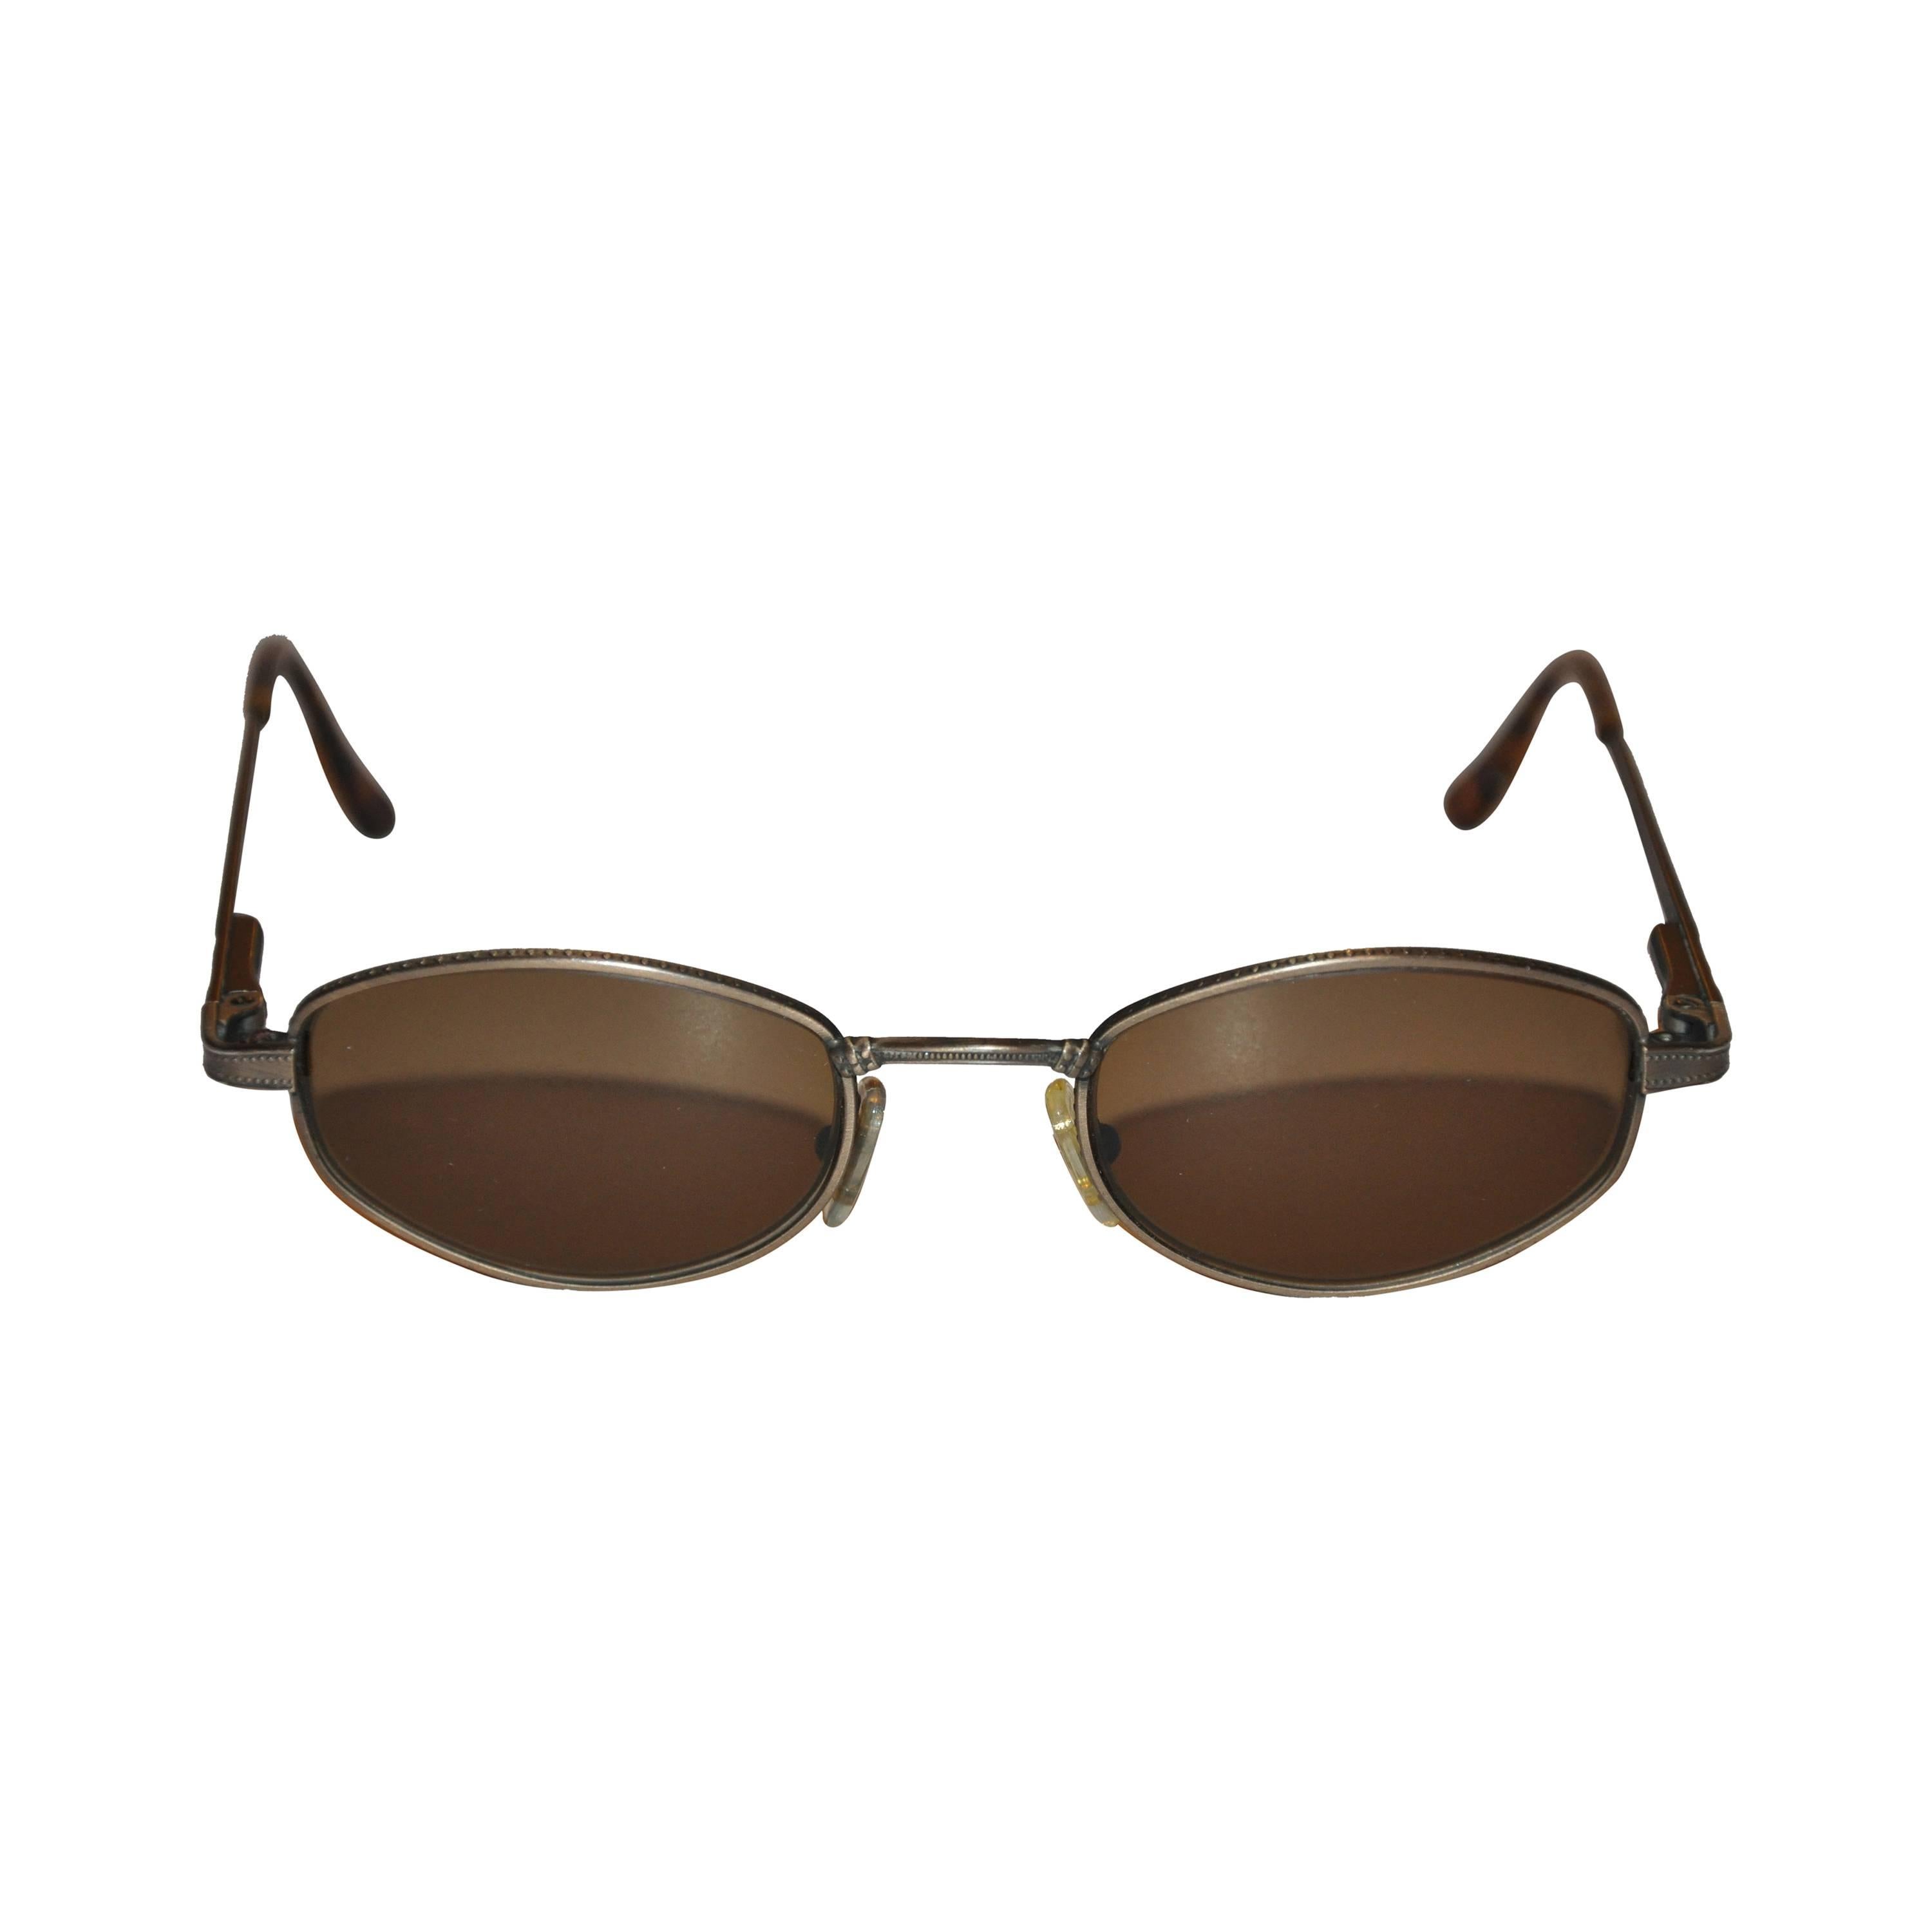 Revo Detailed Bronze Hardware Sunglasses